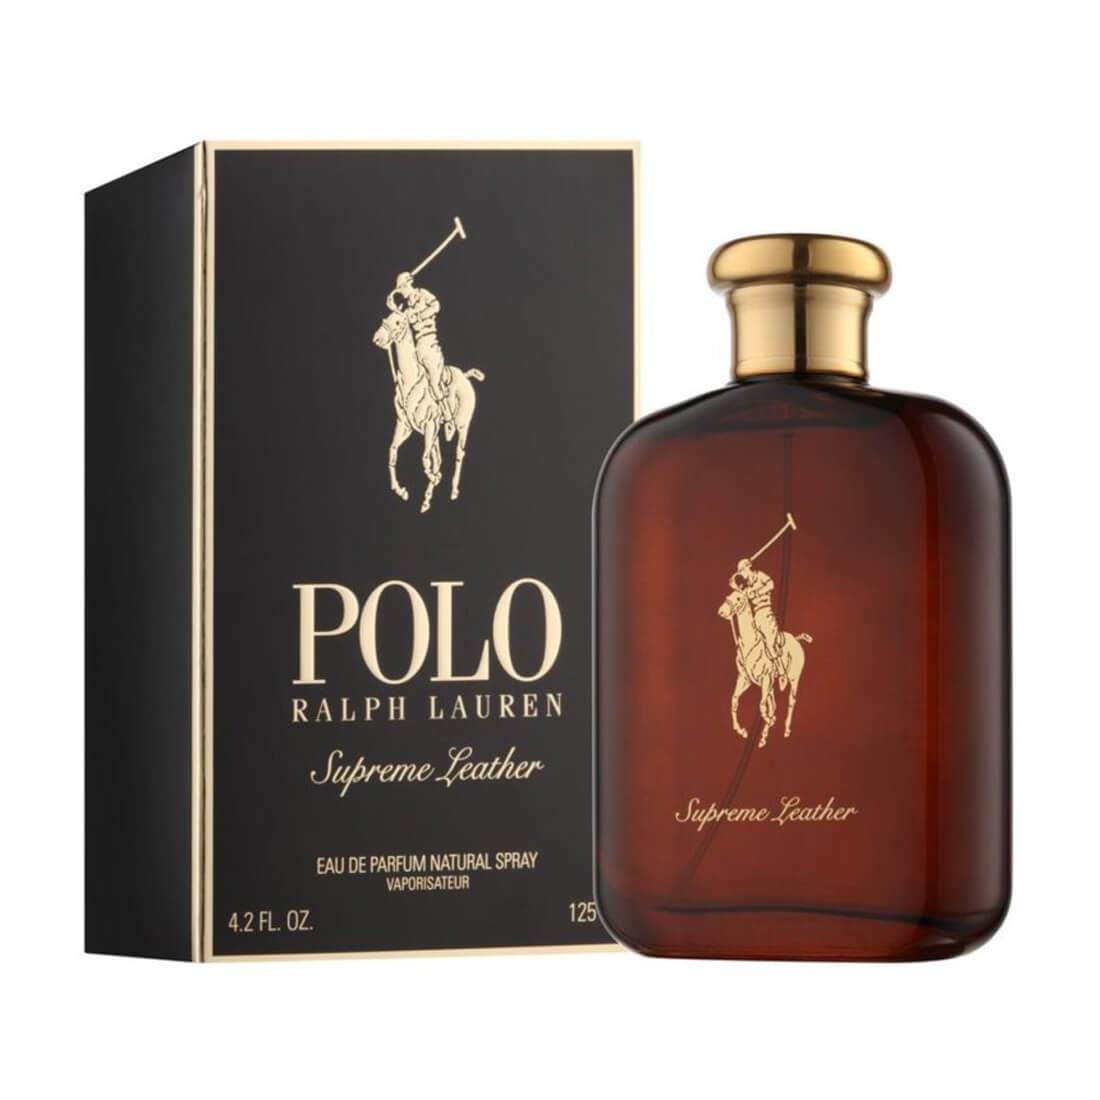 ralph lauren polo supreme leather eau de parfum